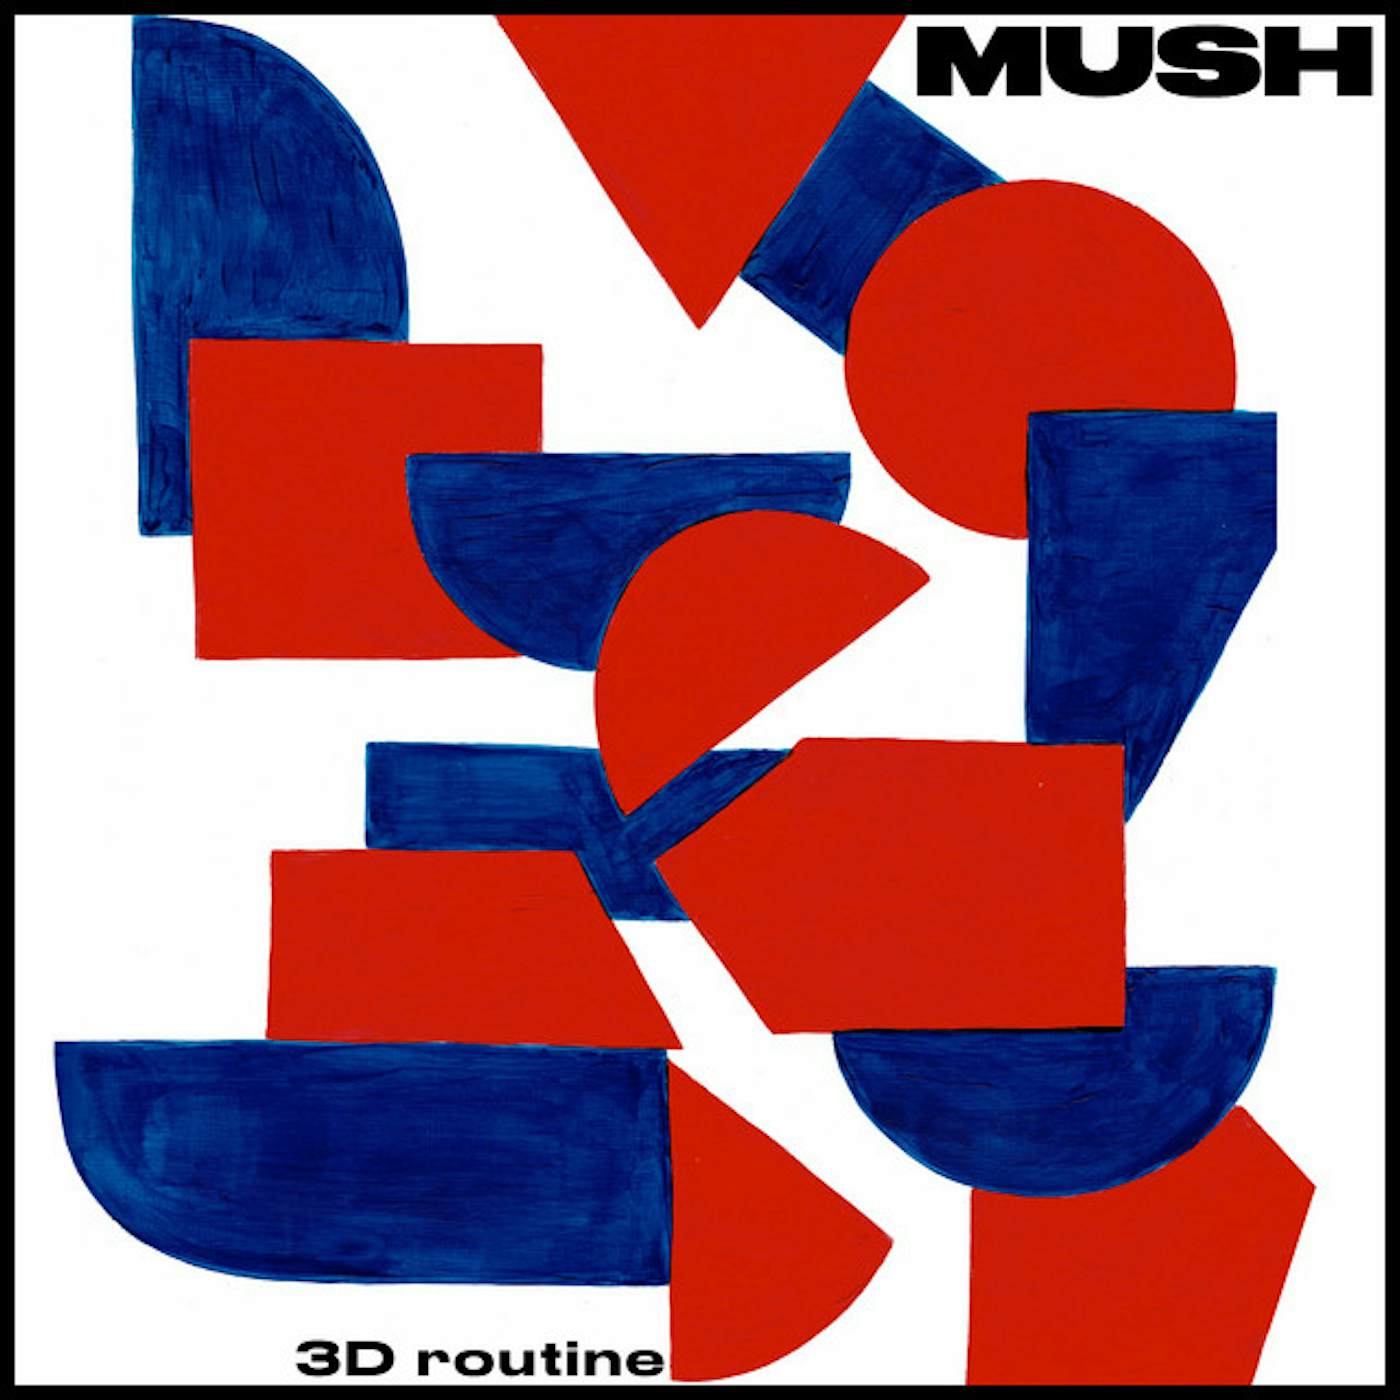 Mush 3D ROUTINE CD